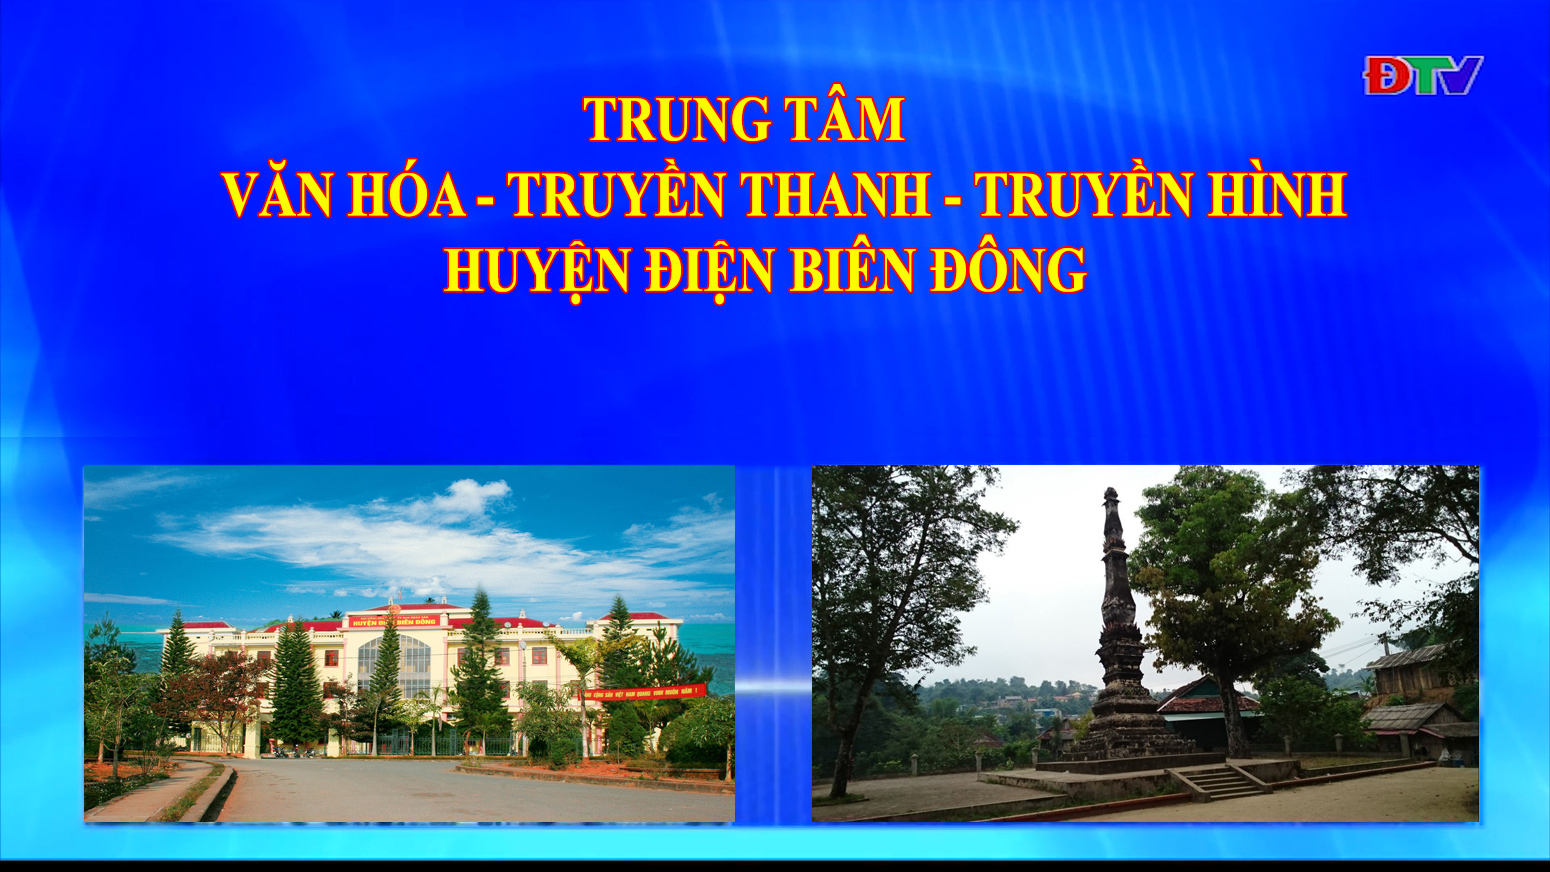 Trung tâm VH-TTTH huyện Điện Biên Đông (Ngày 23-7-2022)